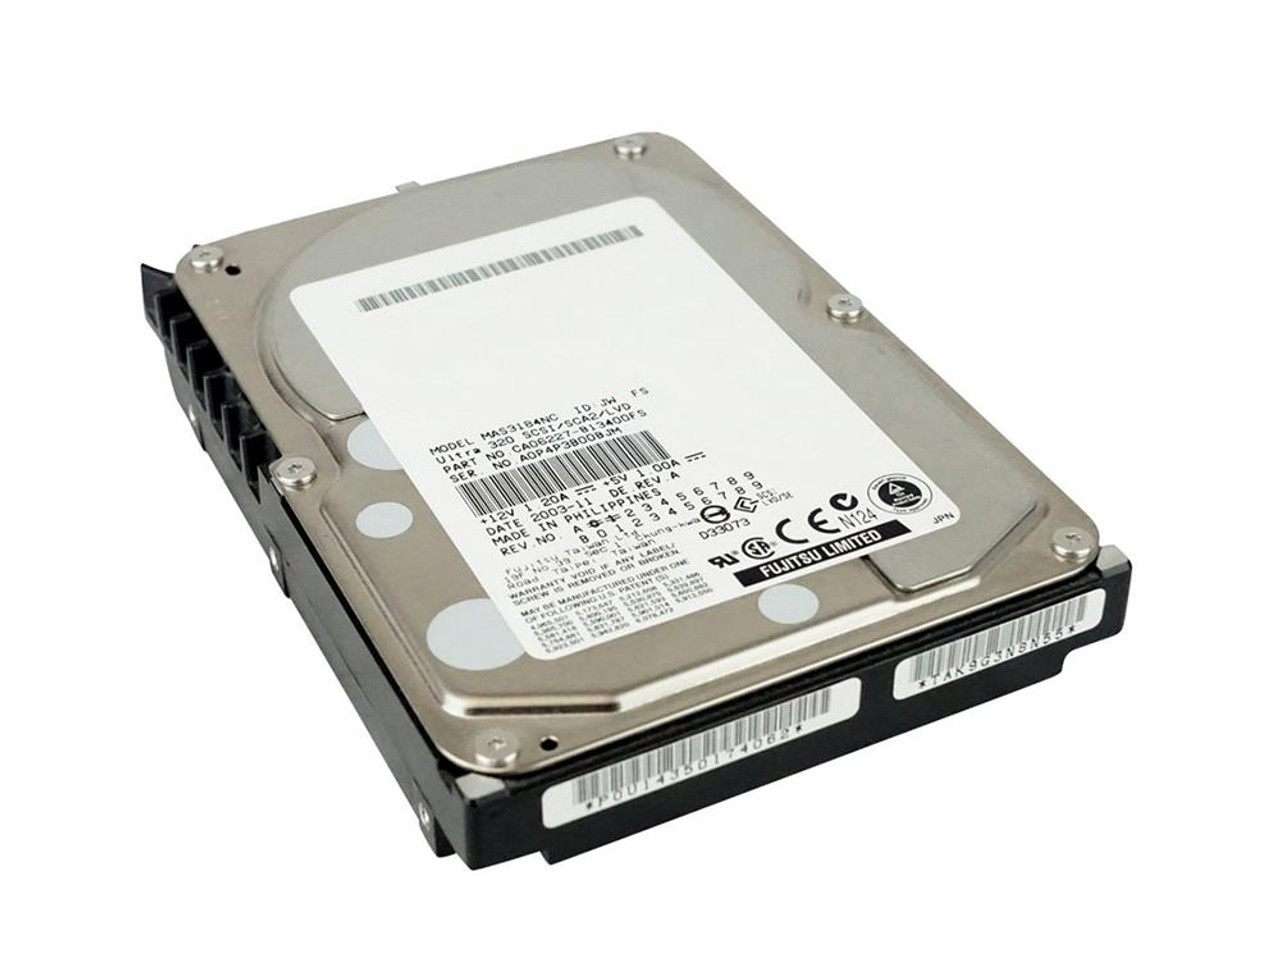 CA05904-B43800SP Fujitsu Enterprise 73.5GB 10000RPM Ultra-160 SCSI 80-Pin 8MB Cache 3.5-inch Internal Hard Drive